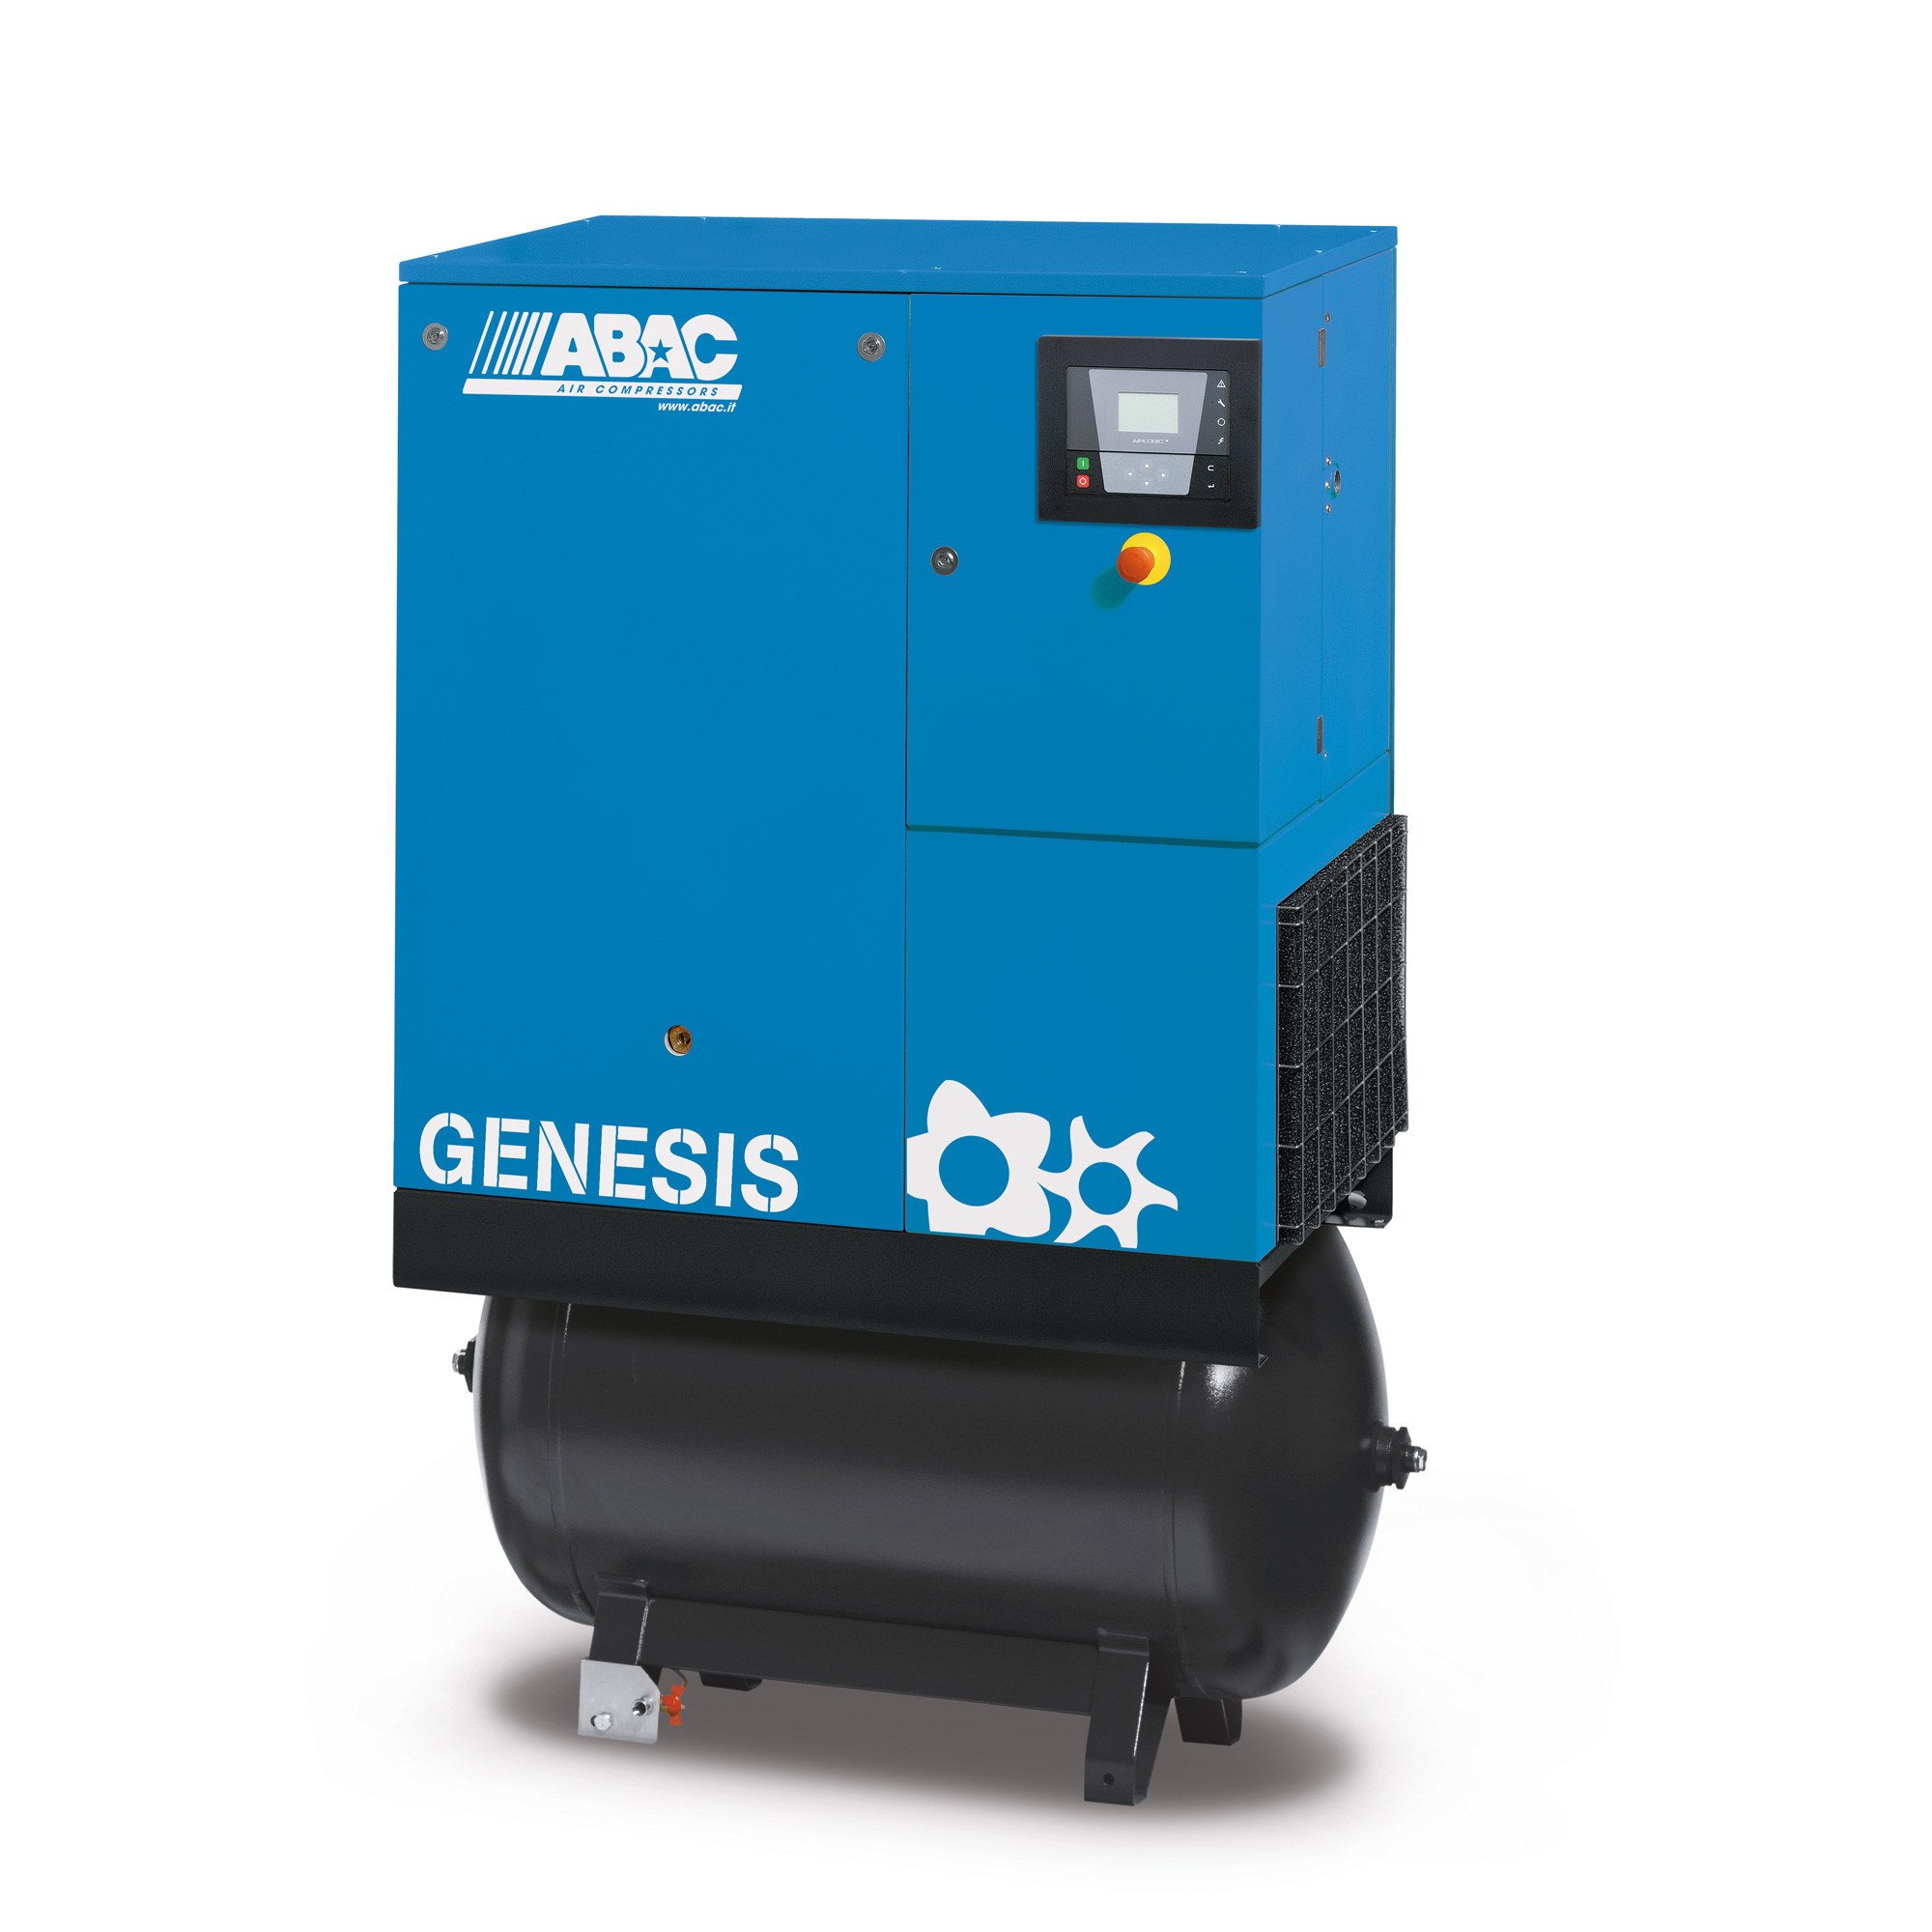 ABAC Genesis 270L, 58.8 CFM 11 kW定速螺杆空压机